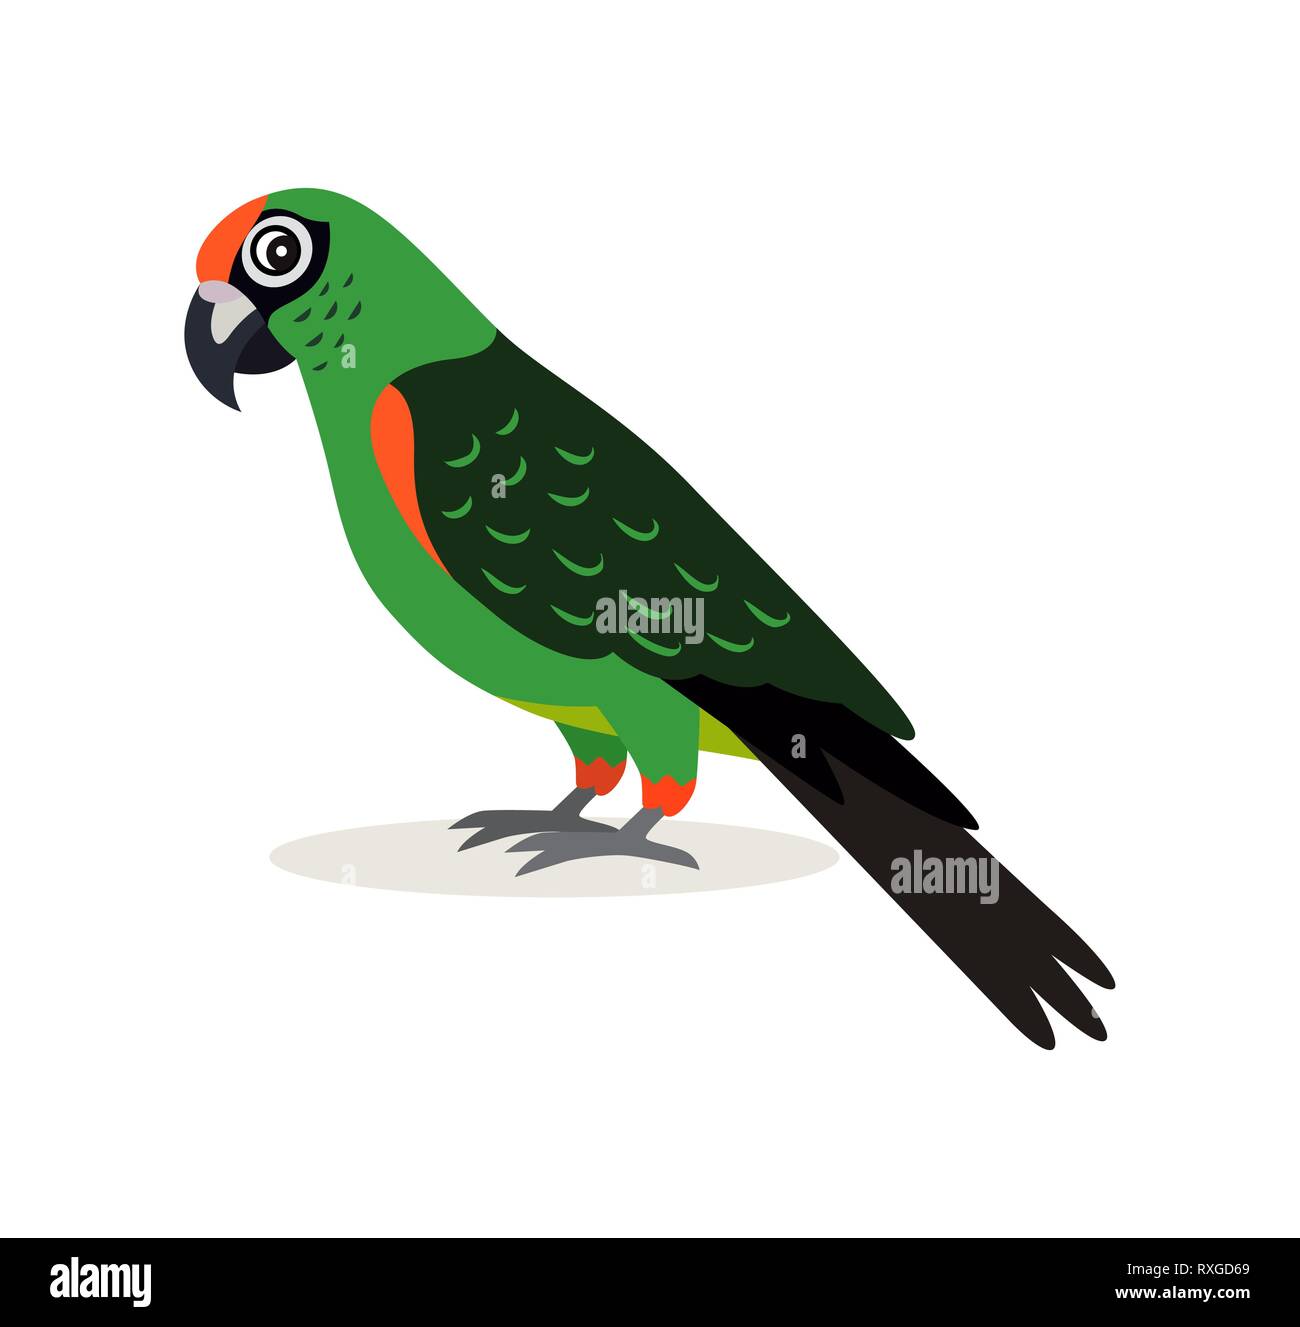 Afrikanische Tier, bunte Green Parrot lovebird Symbol auf weißem Hintergrund, Vector Illustration im flachen Stil. Stock Vektor